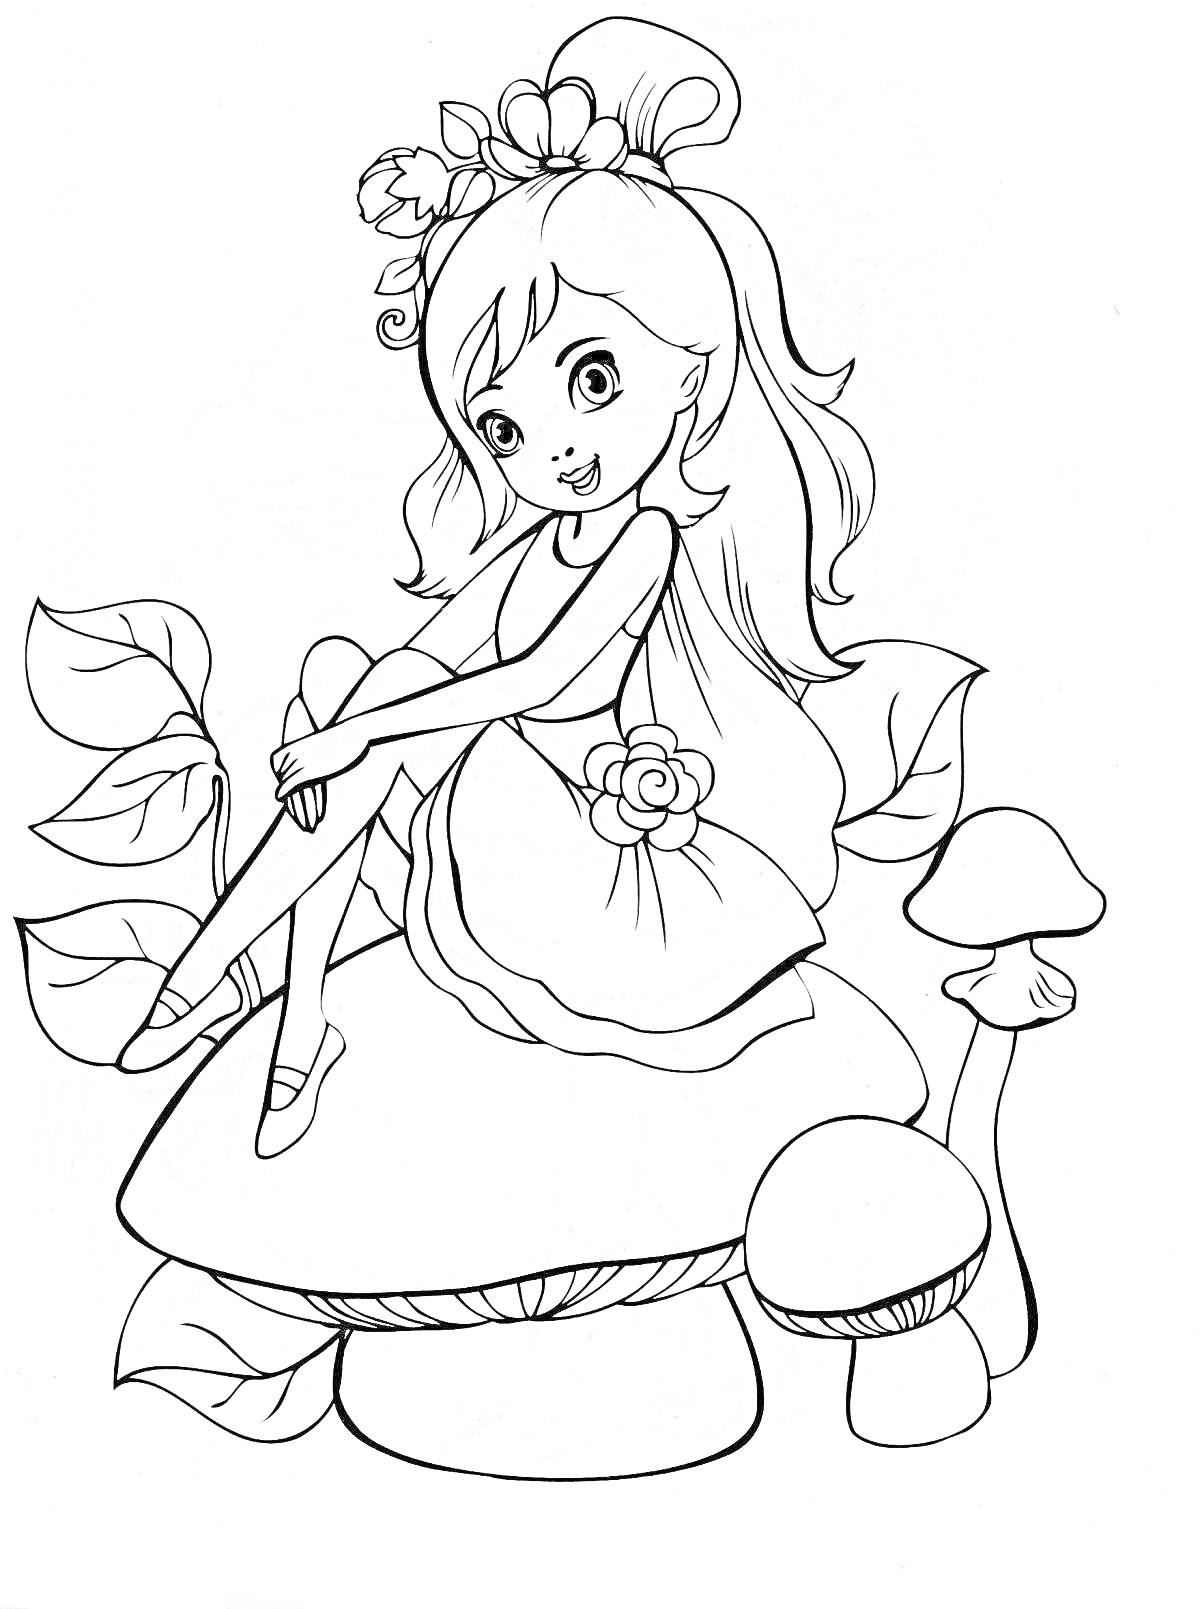 Раскраска Девочка-фея на грибе с цветами и листьями